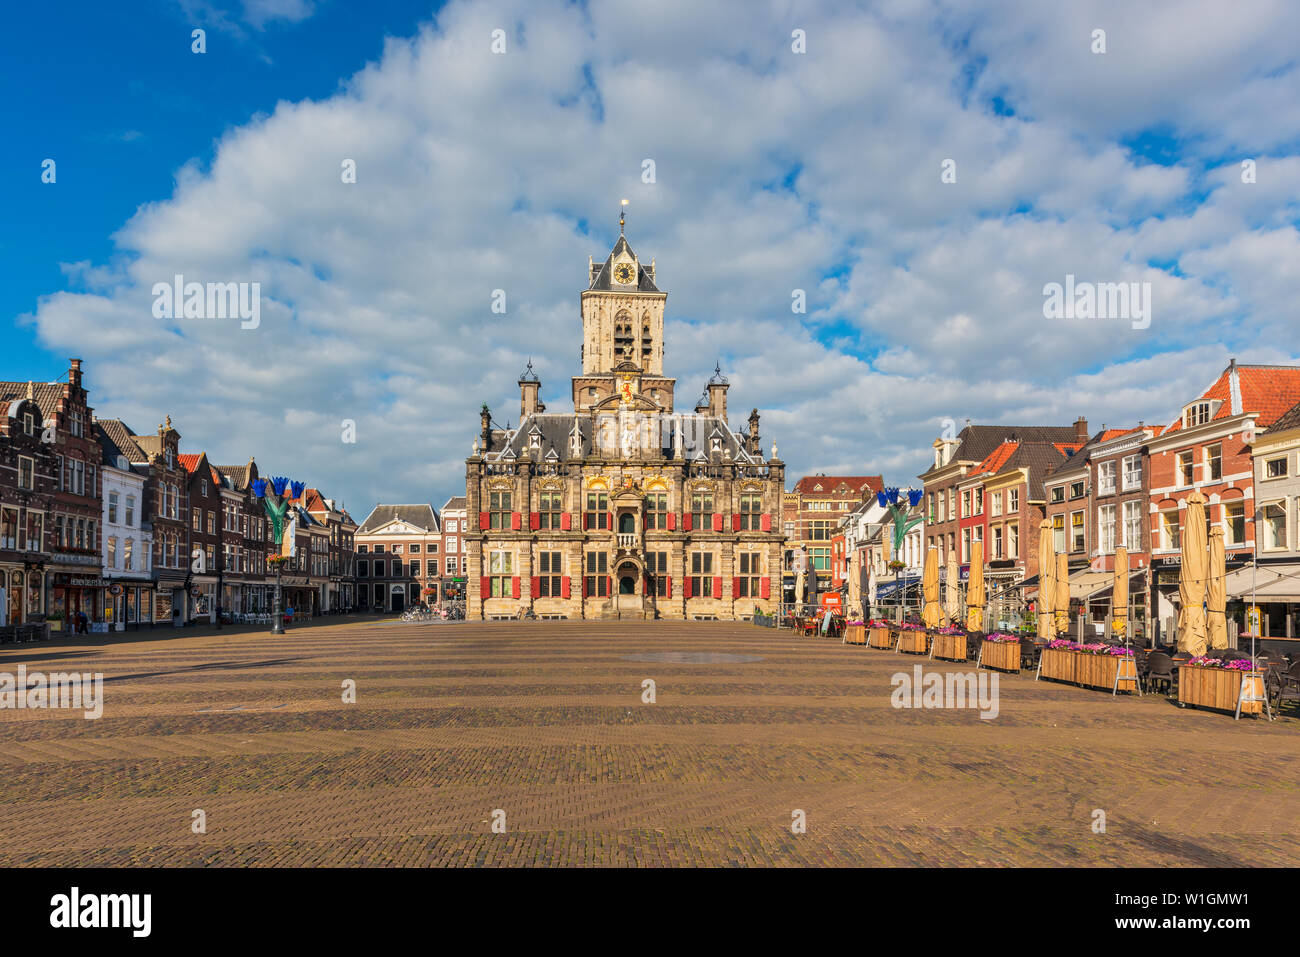 Rathaus und Marktplatz in Delft, Niederlande. Delft ist eine alte holländische Stadt, die für seine Keramik, Kanäle und Malers Johannes Vermeer bekannt ist. Stockfoto